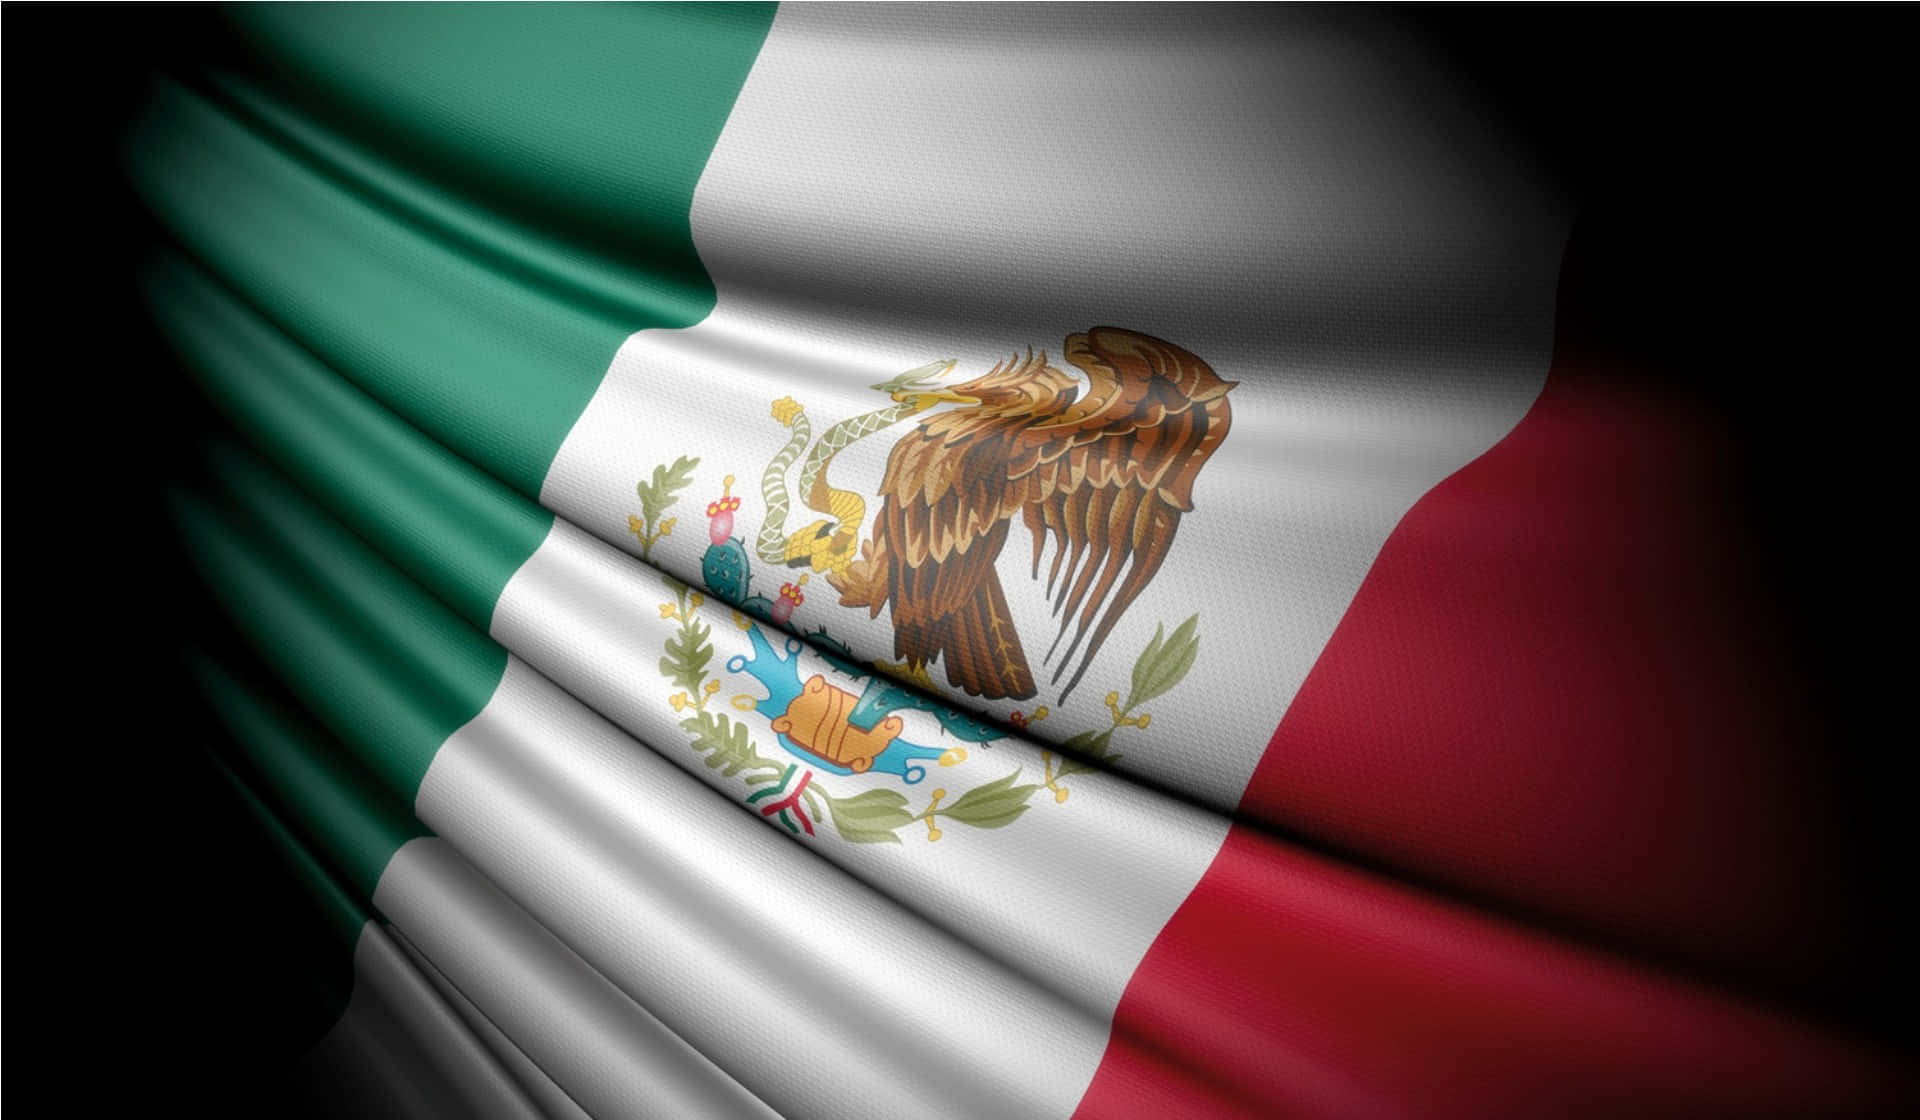 Celebrating Mexico's vibrant heritage